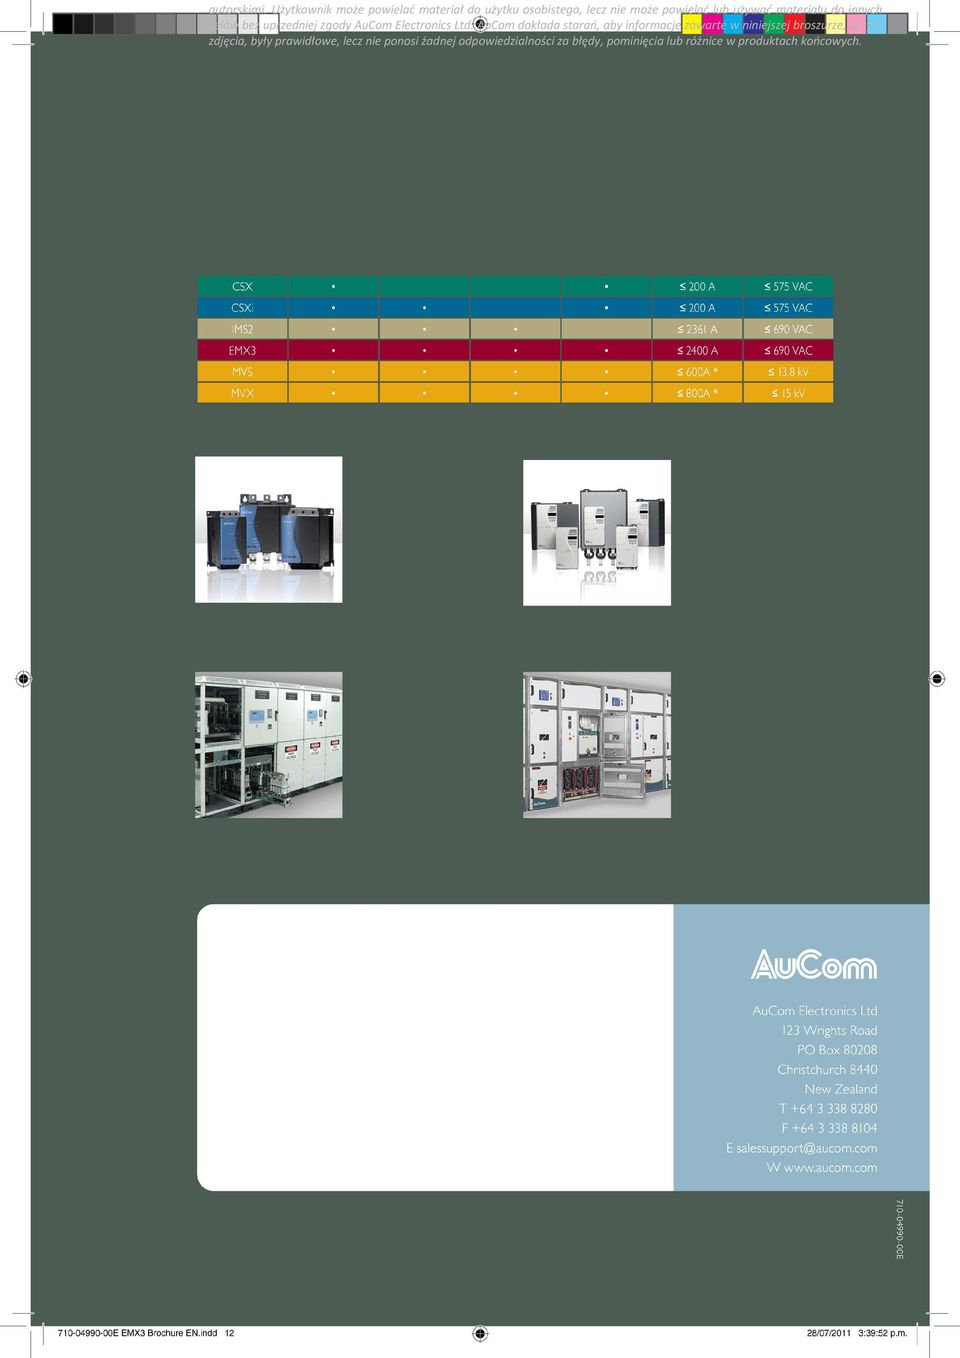 materiału do innych celów bez uprzedniej zgody AuCom Electronics Ltd.